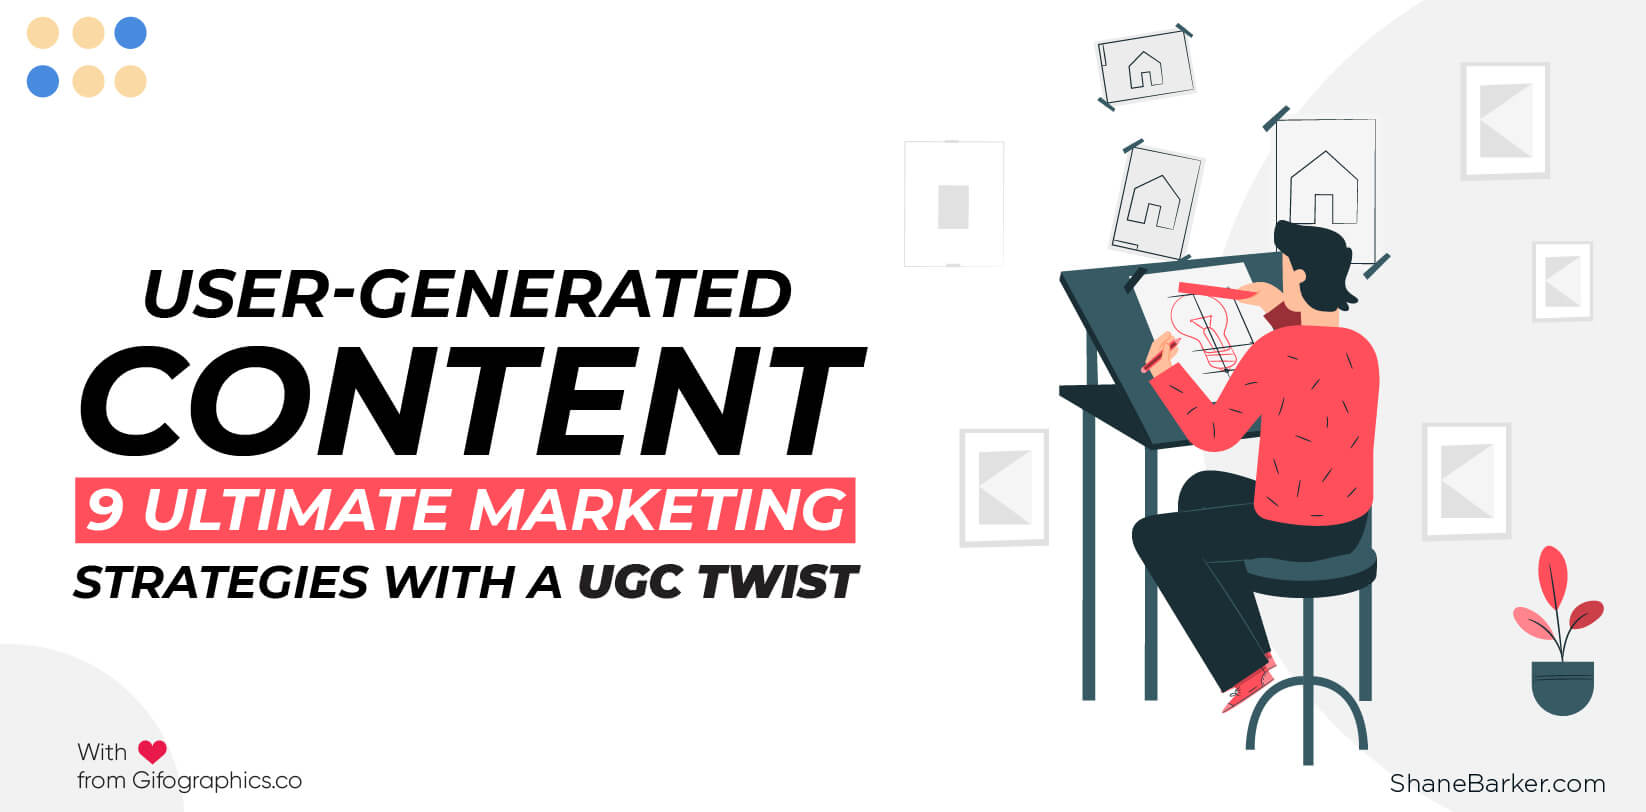 ユーザー生成コンテンツ：UGCツイストによる9つの究極のマーケティング戦略